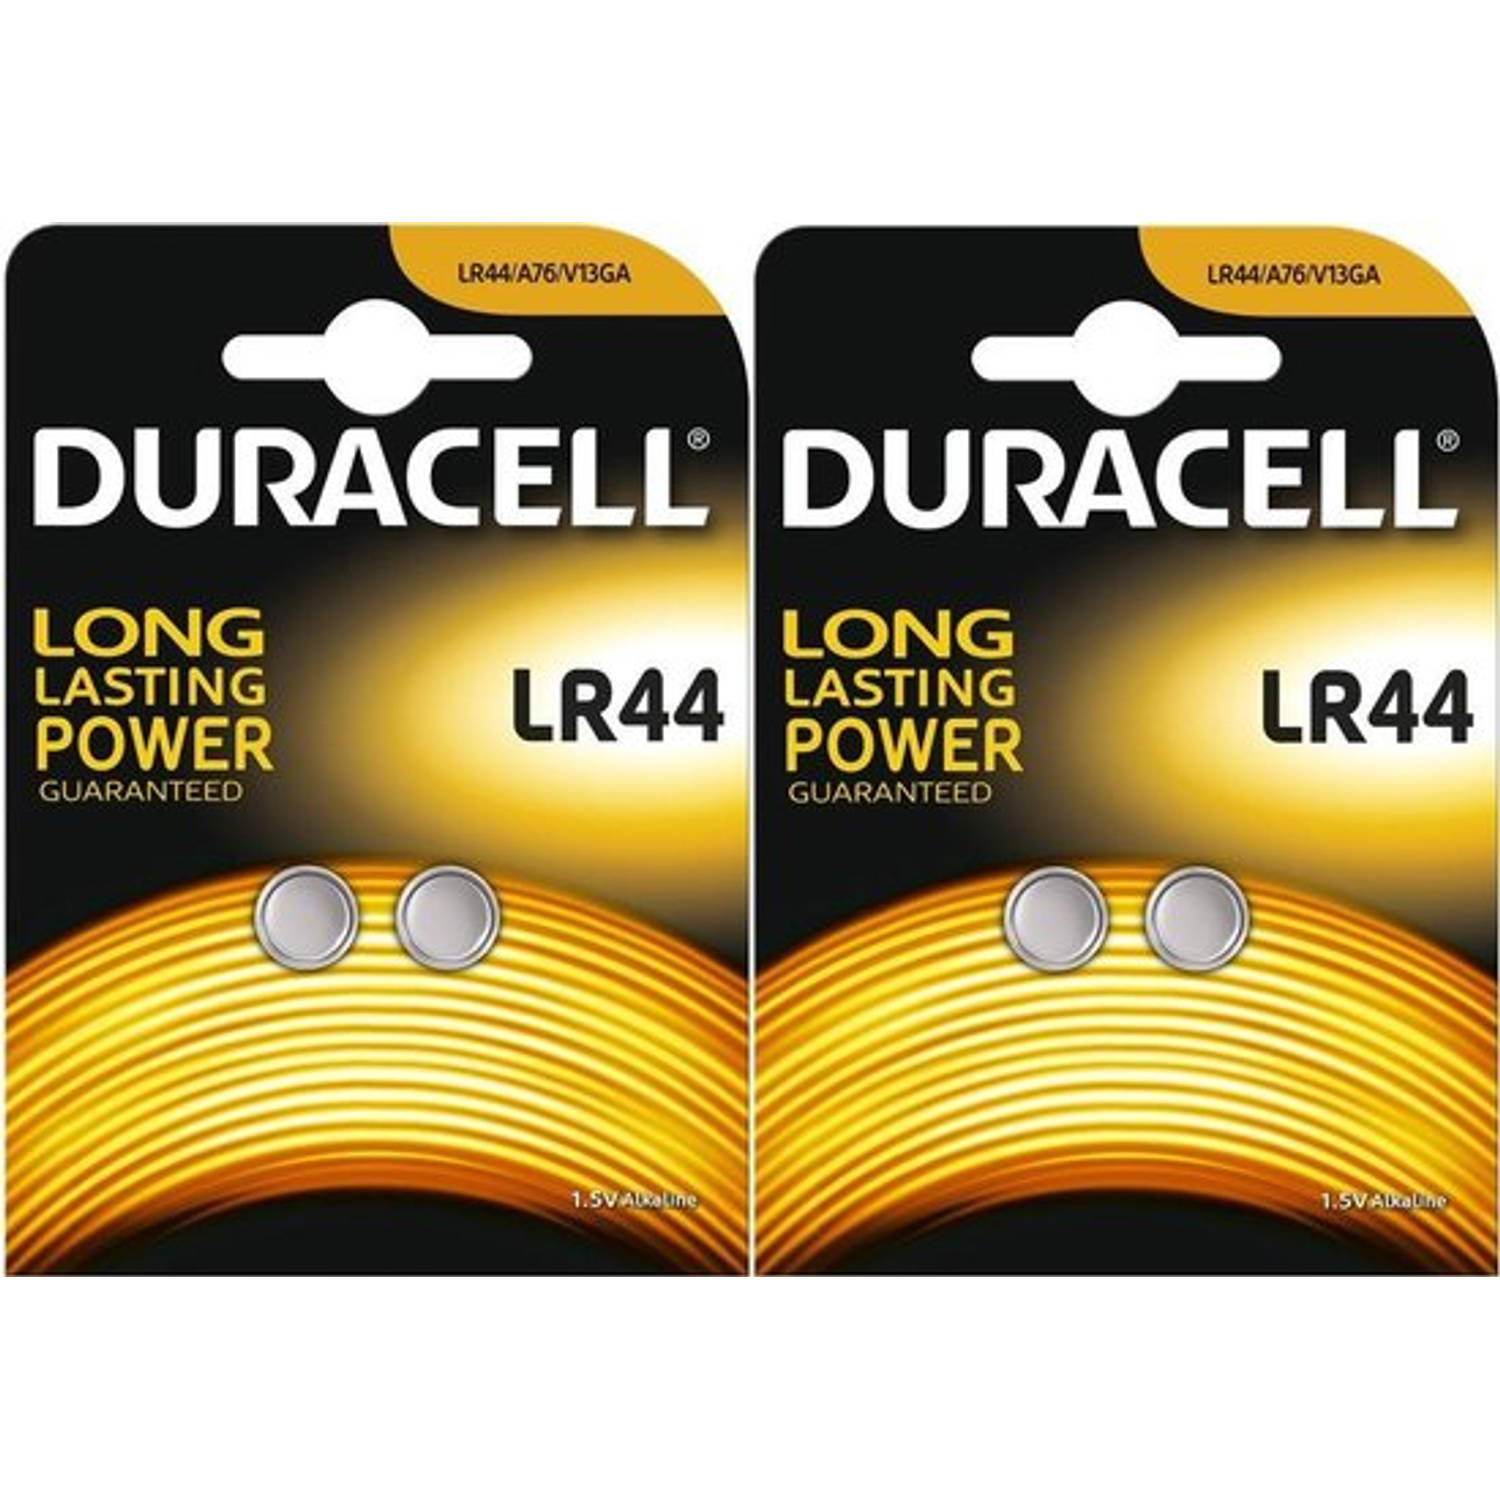 Duracell LR44 AG13 Knoopcel Batterij - 2 x 2 blister